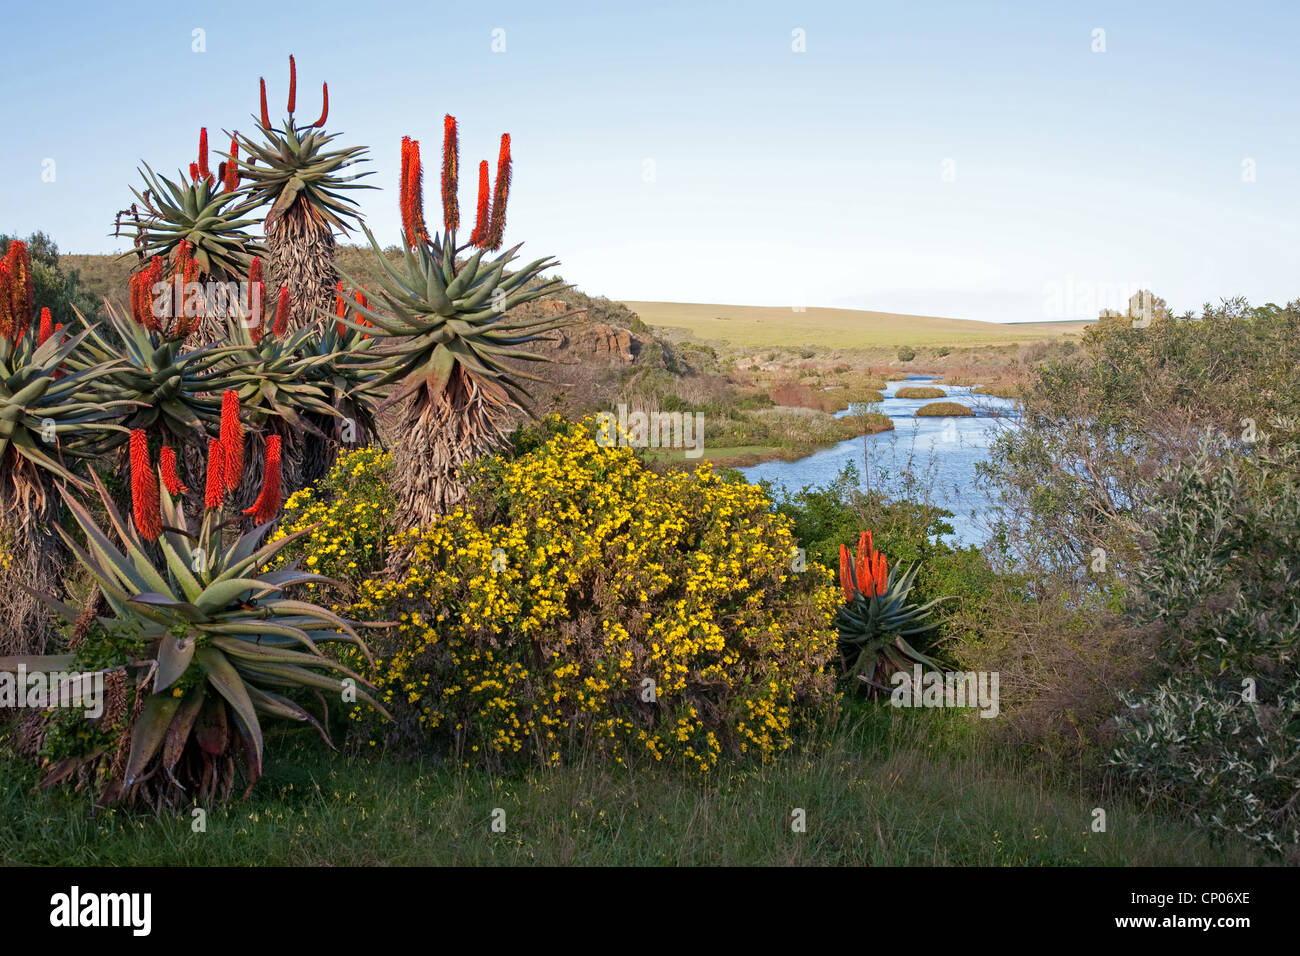 L'aloès du Cap, l'Amer, L'Aloès Aloès rouge, appuyez sur l'Aloès (Aloe ferox), de l'aloès en face de la rivière Breede, Afrique du Sud, Western Cape, Parc National de Bontebok, Swellendam Banque D'Images